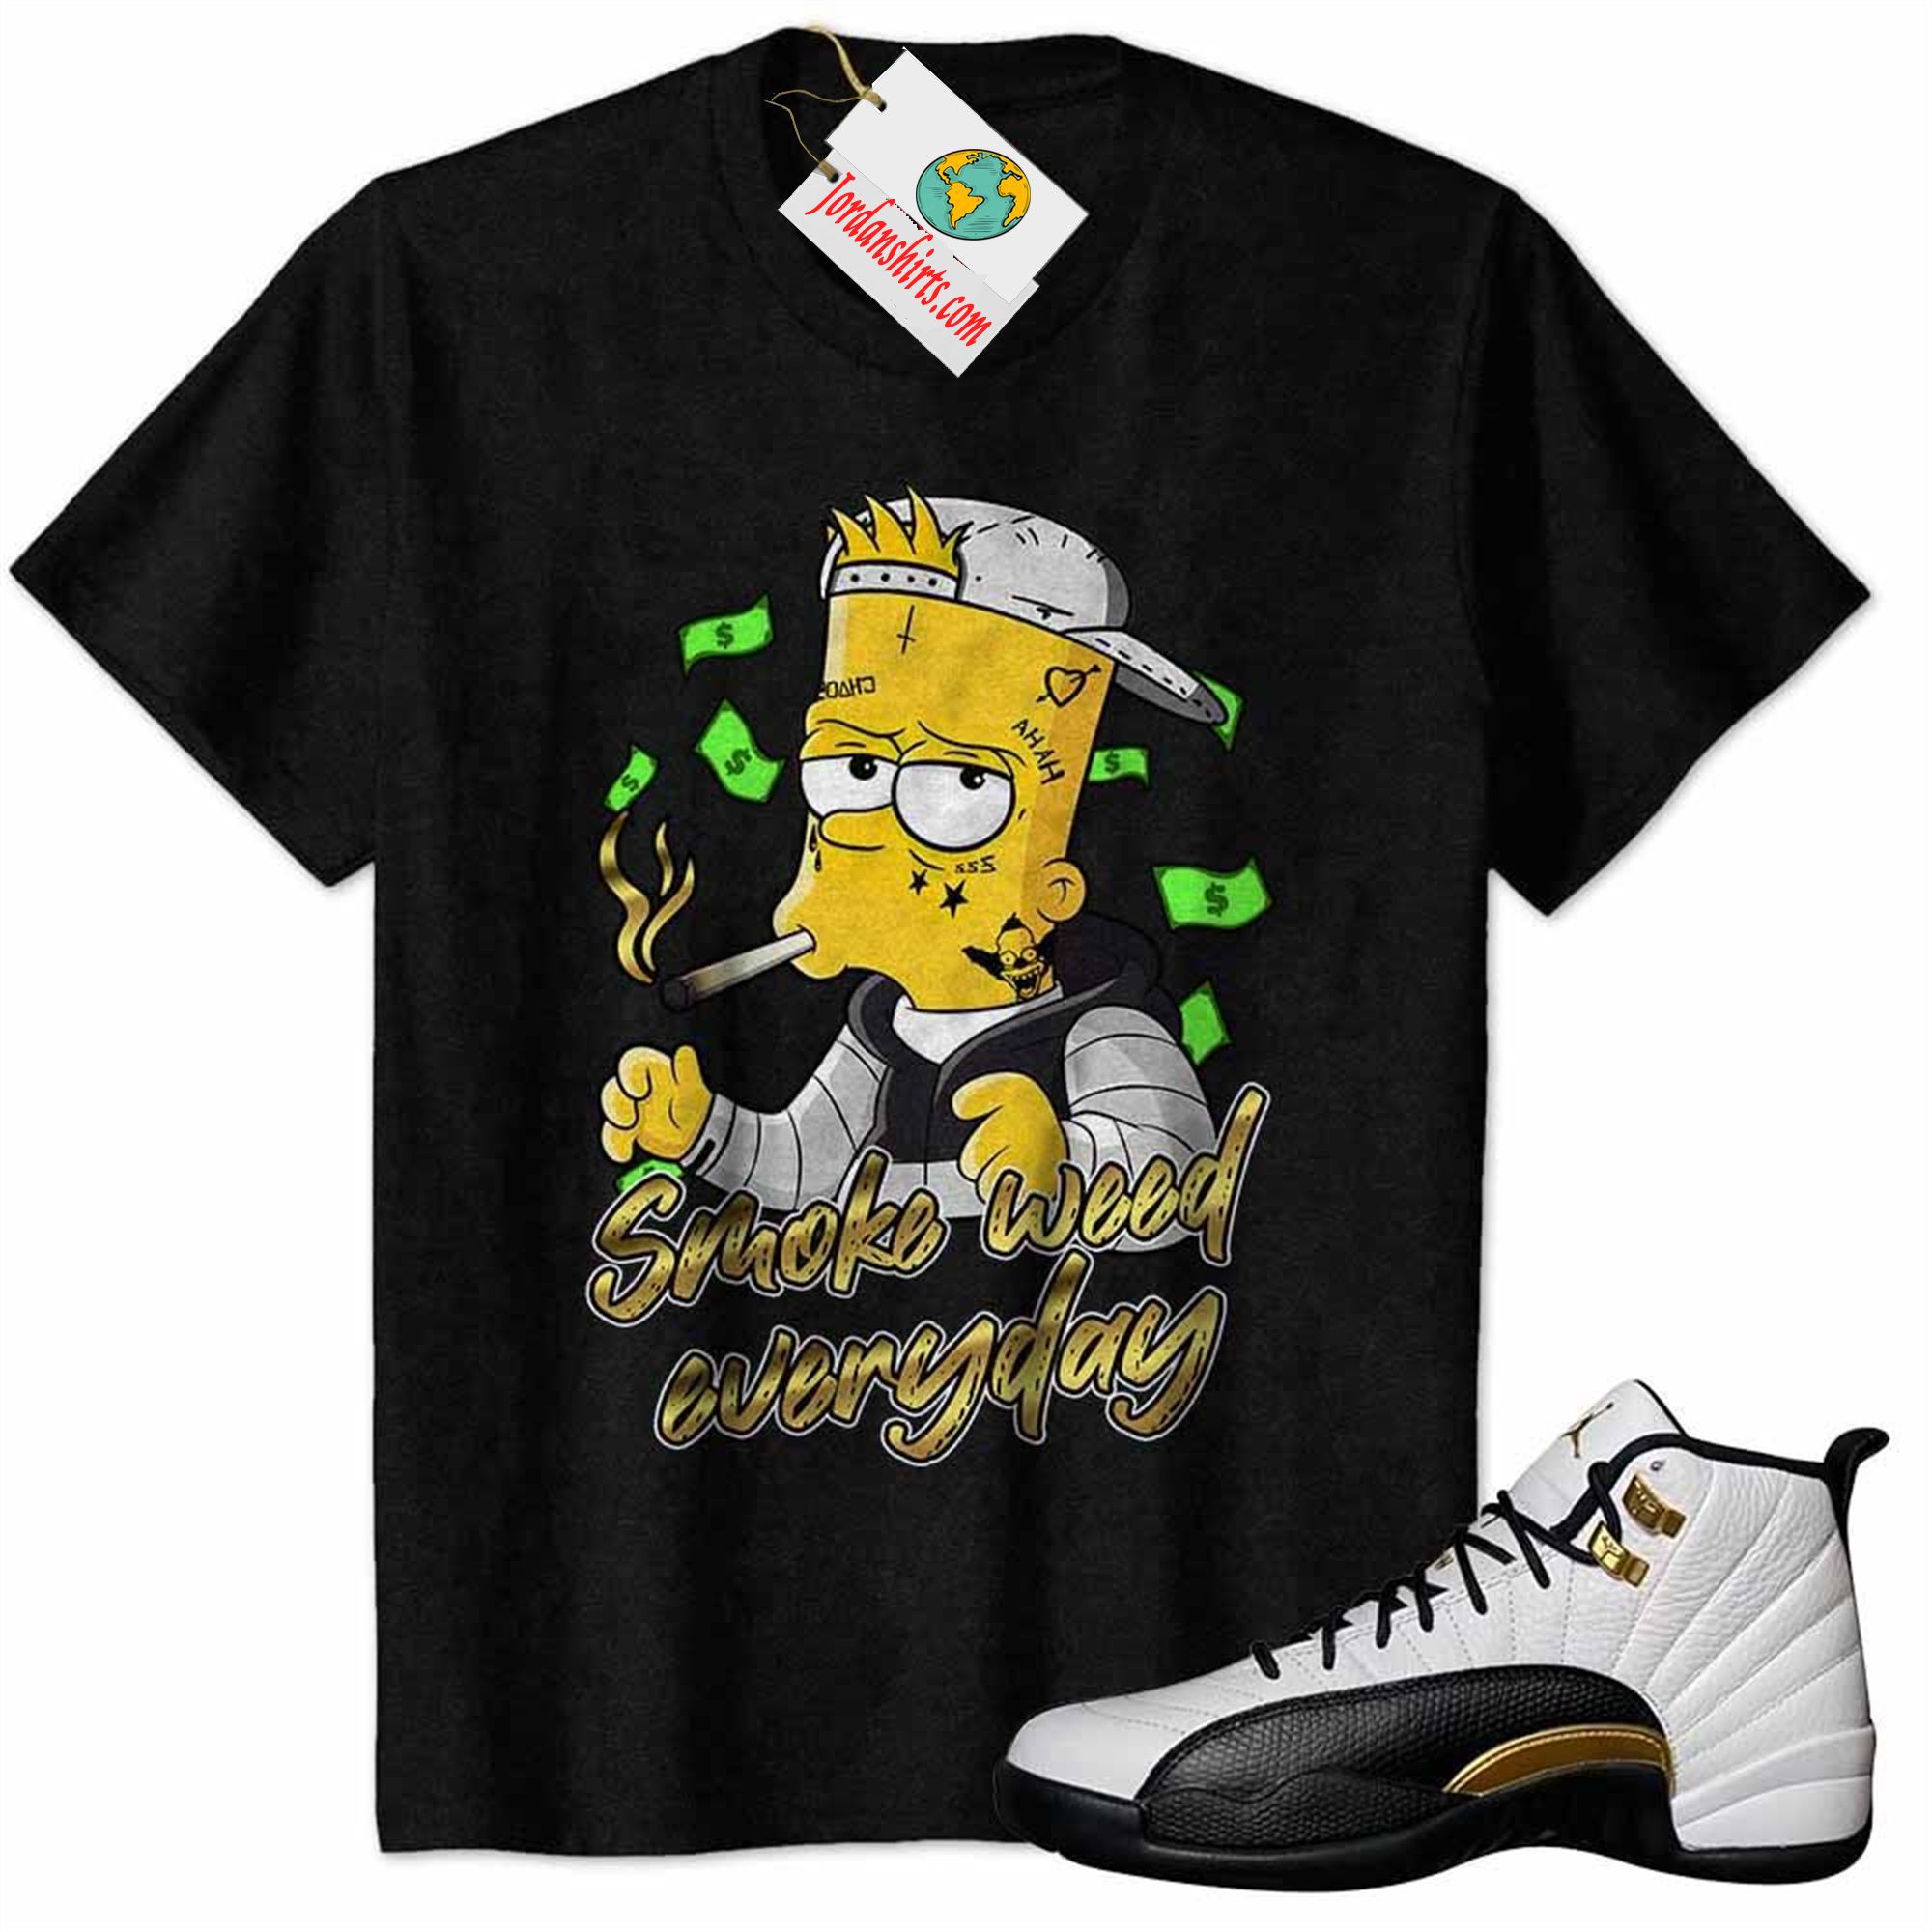 Jordan 12 Shirt, Bart Simpson Smoke Weed Everyday Black Air Jordan 12 Royalty 12s Plus Size Up To 5xl